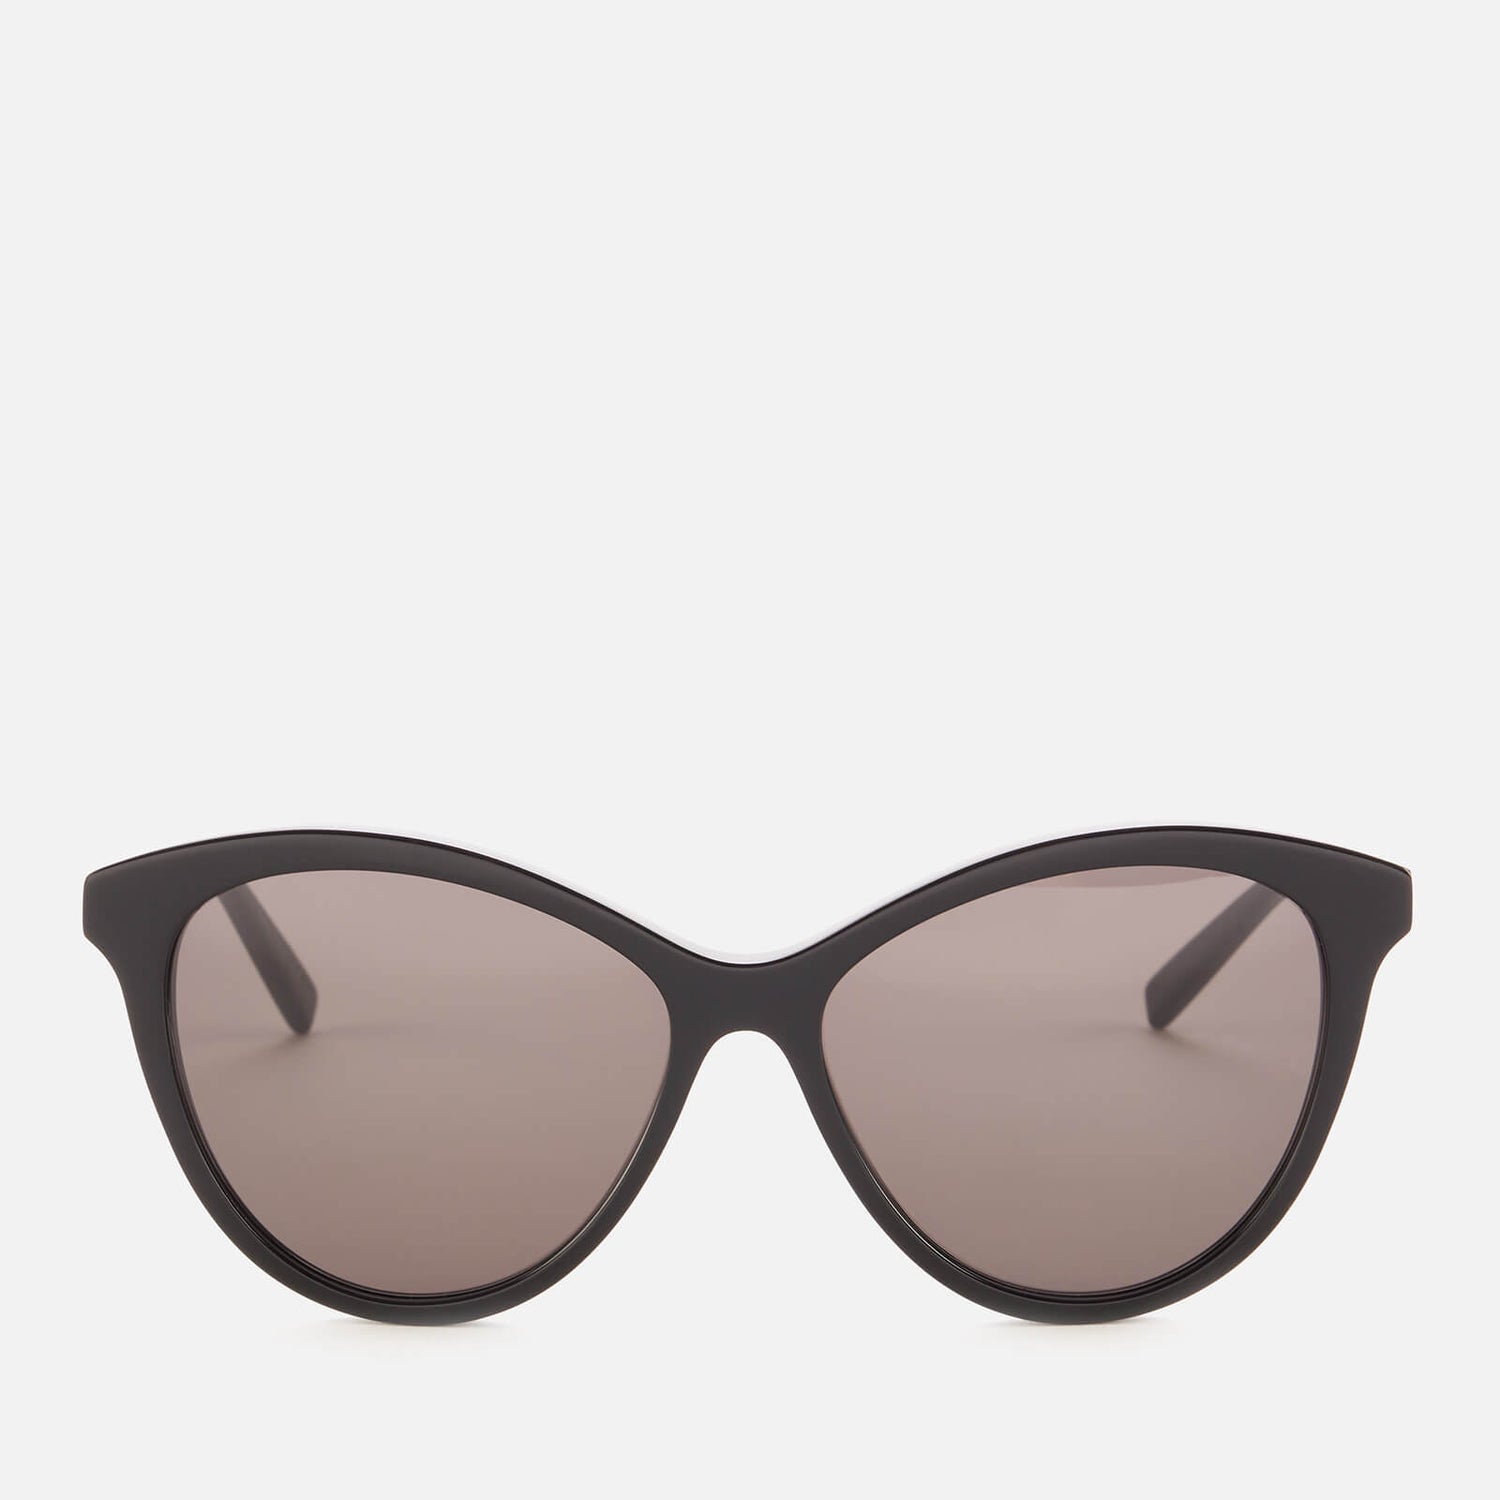 Saint Laurent Women's Cat Eye Aceteate Sunglasses - Black